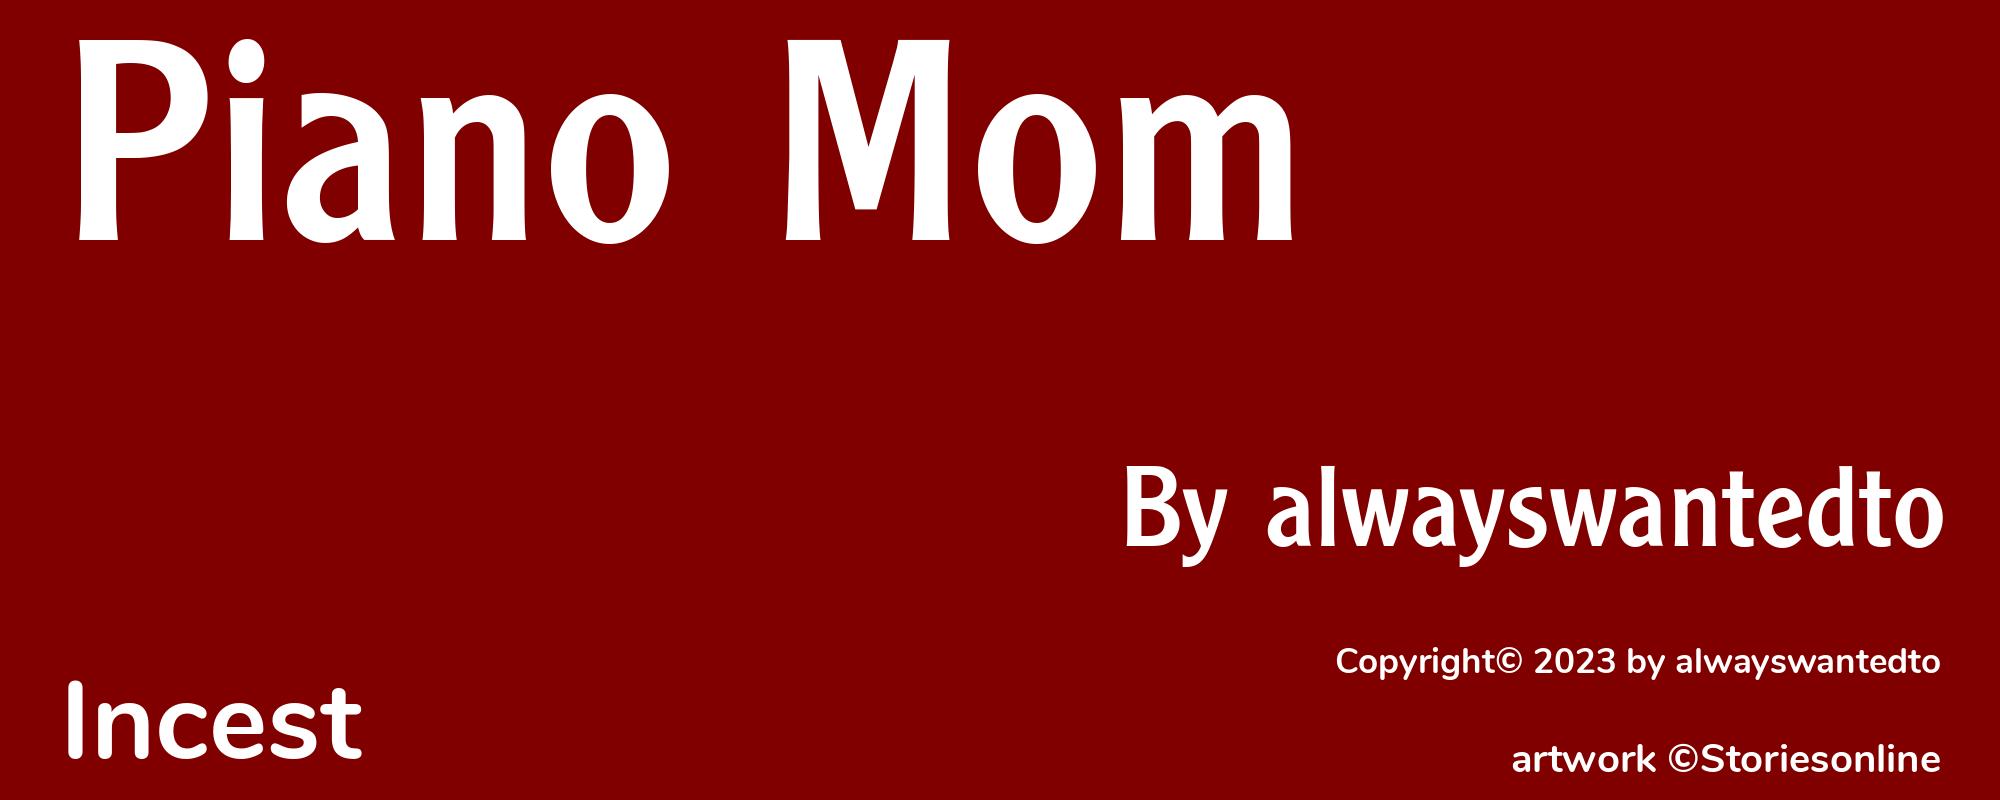 Piano Mom - Cover